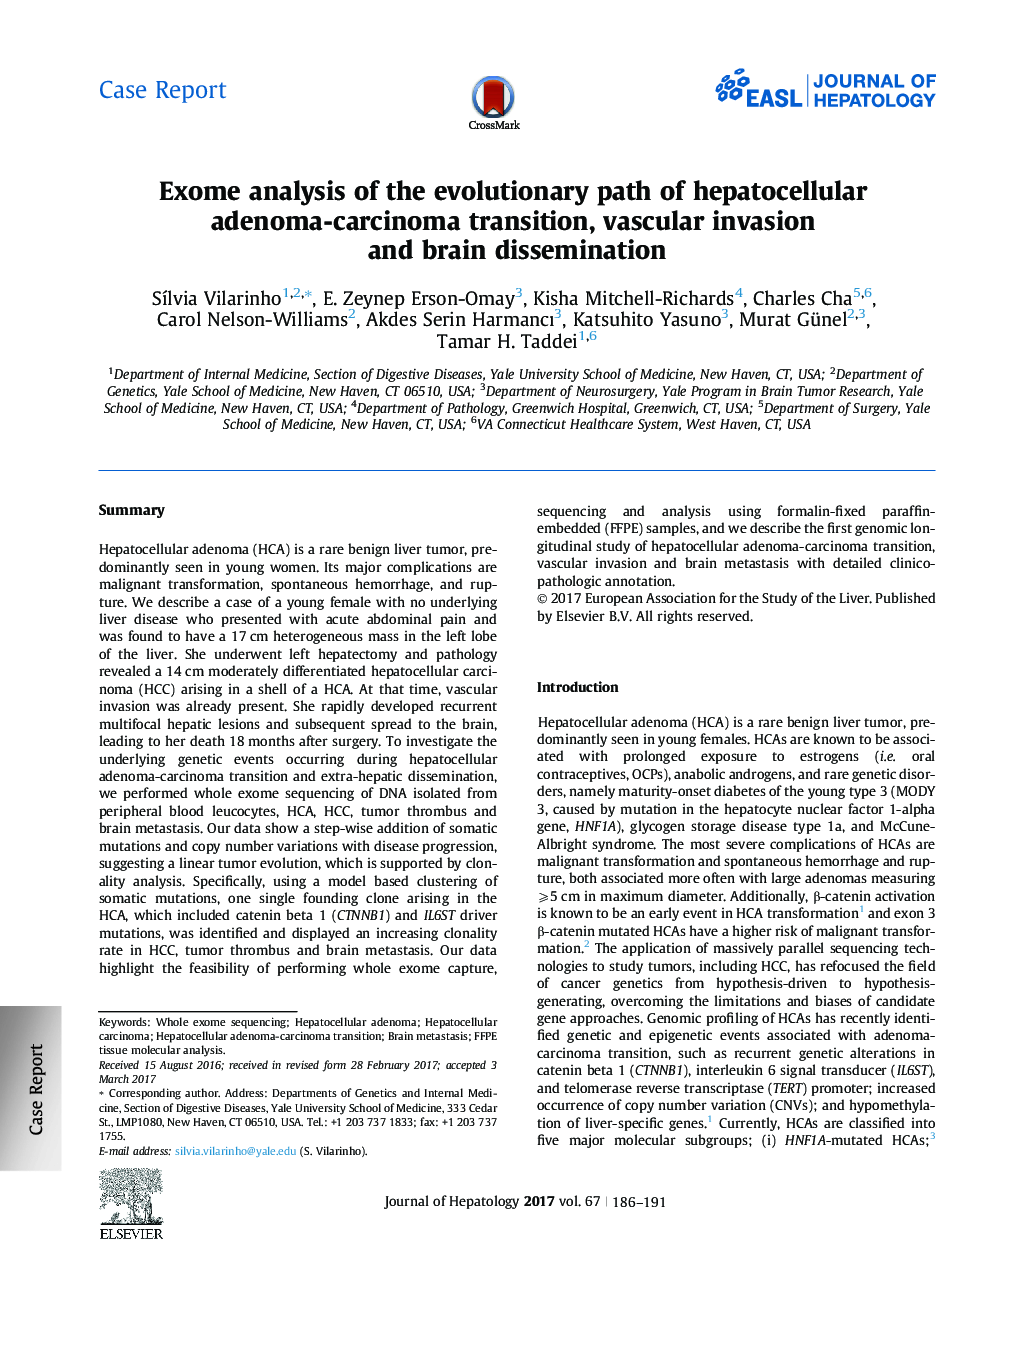 تجزیه و تحلیل عاملی از مسیر تکاملی انتقال آدرنوم-کارسینوم هپاتوسلولار، تهاجم عروقی و انتشار مغزی 